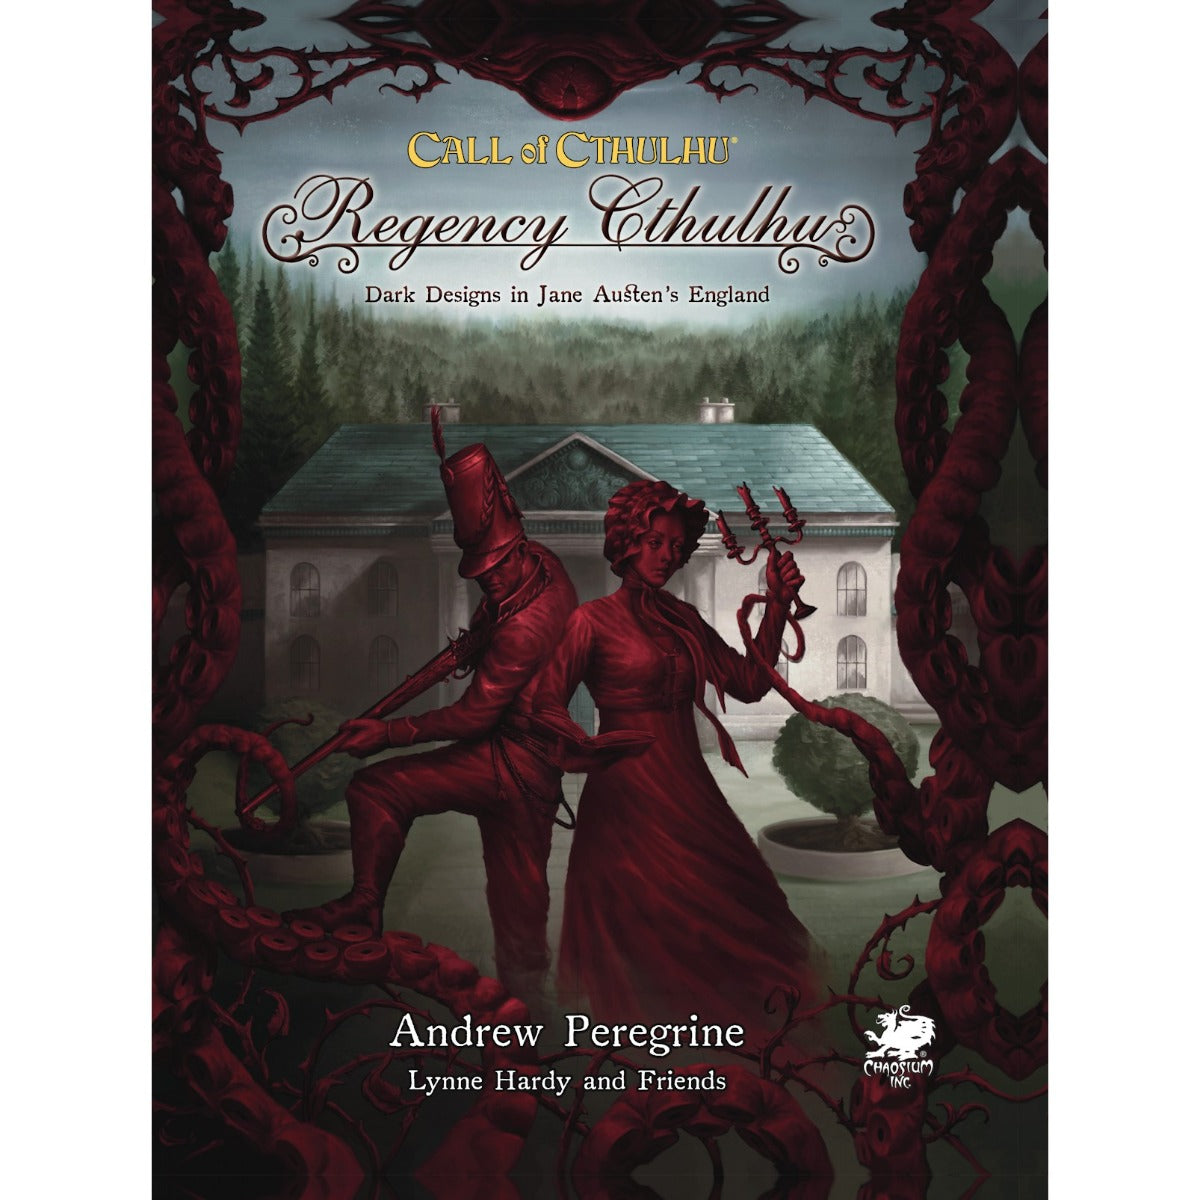 Call of Cthulhu RPG - Regency Cthulhu: Dark Designs in Jane Austen's England